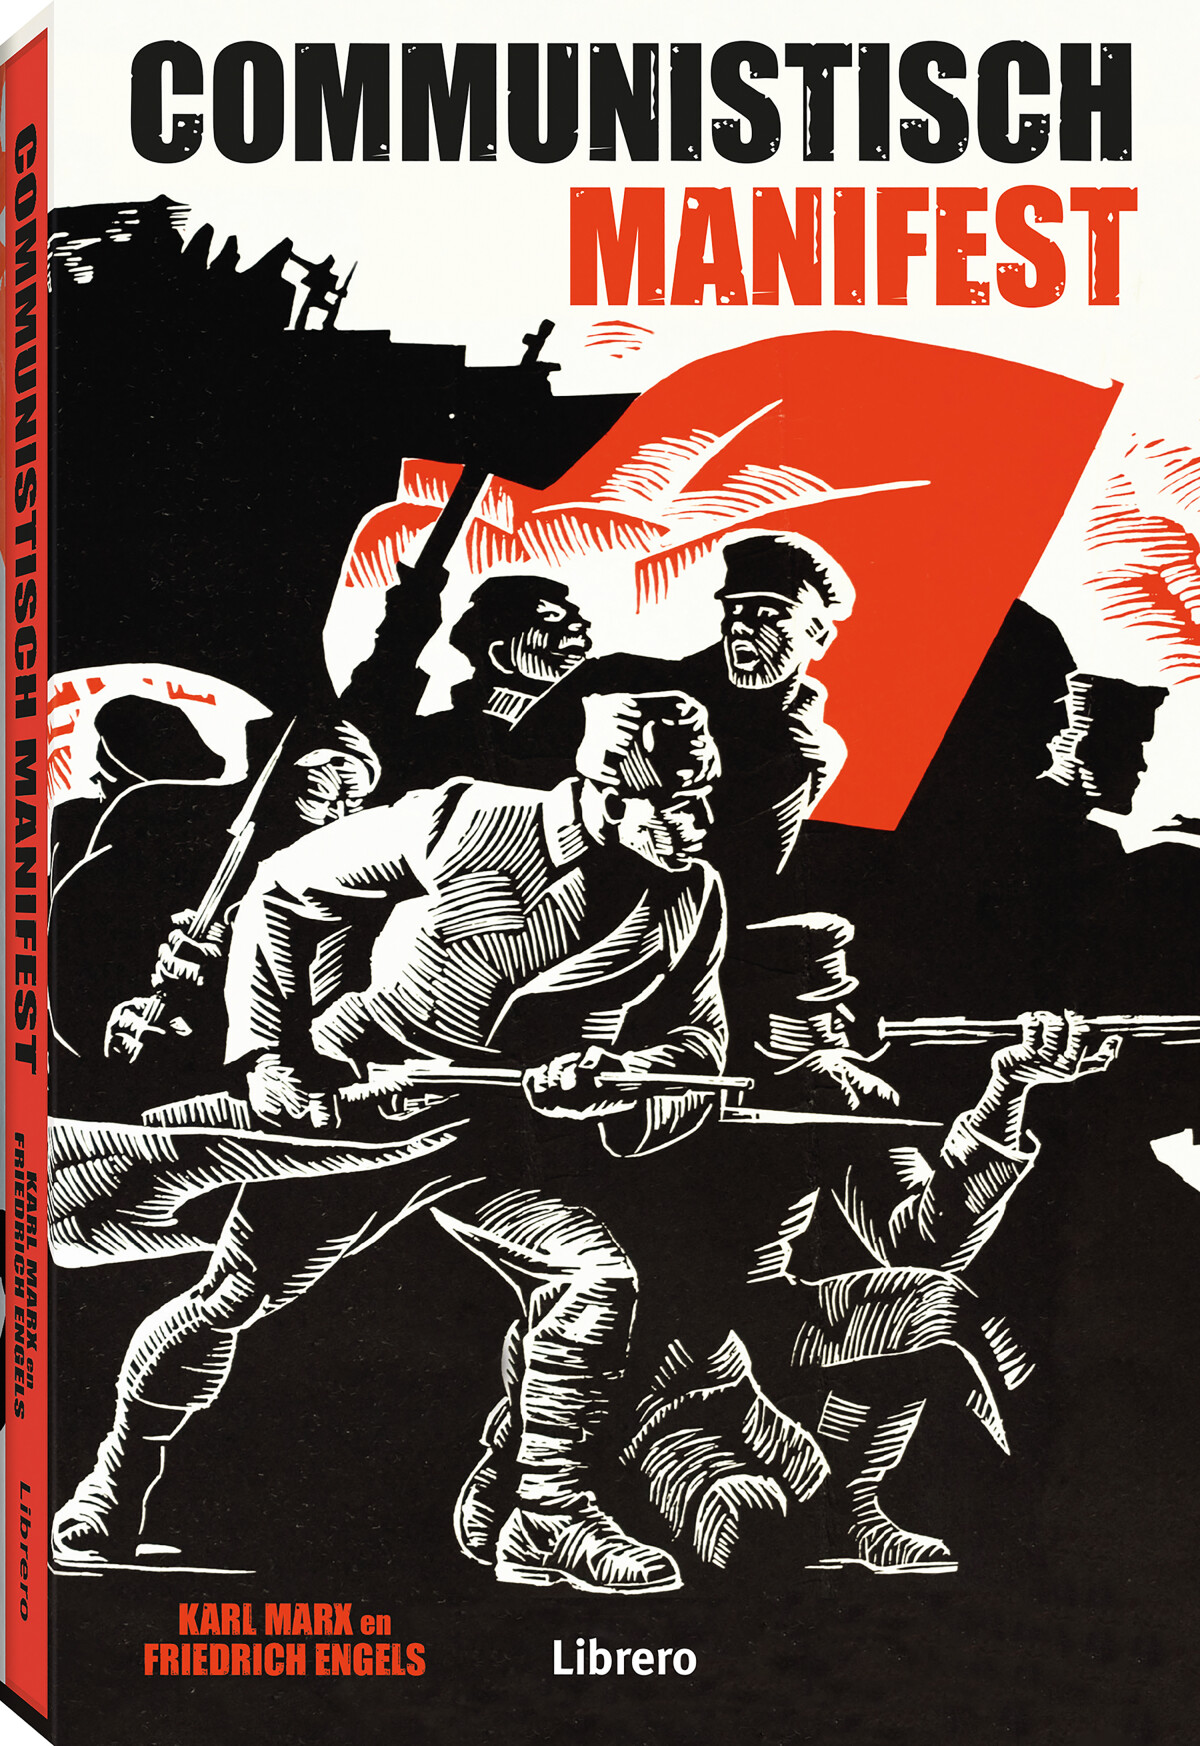 Communistisch manifest